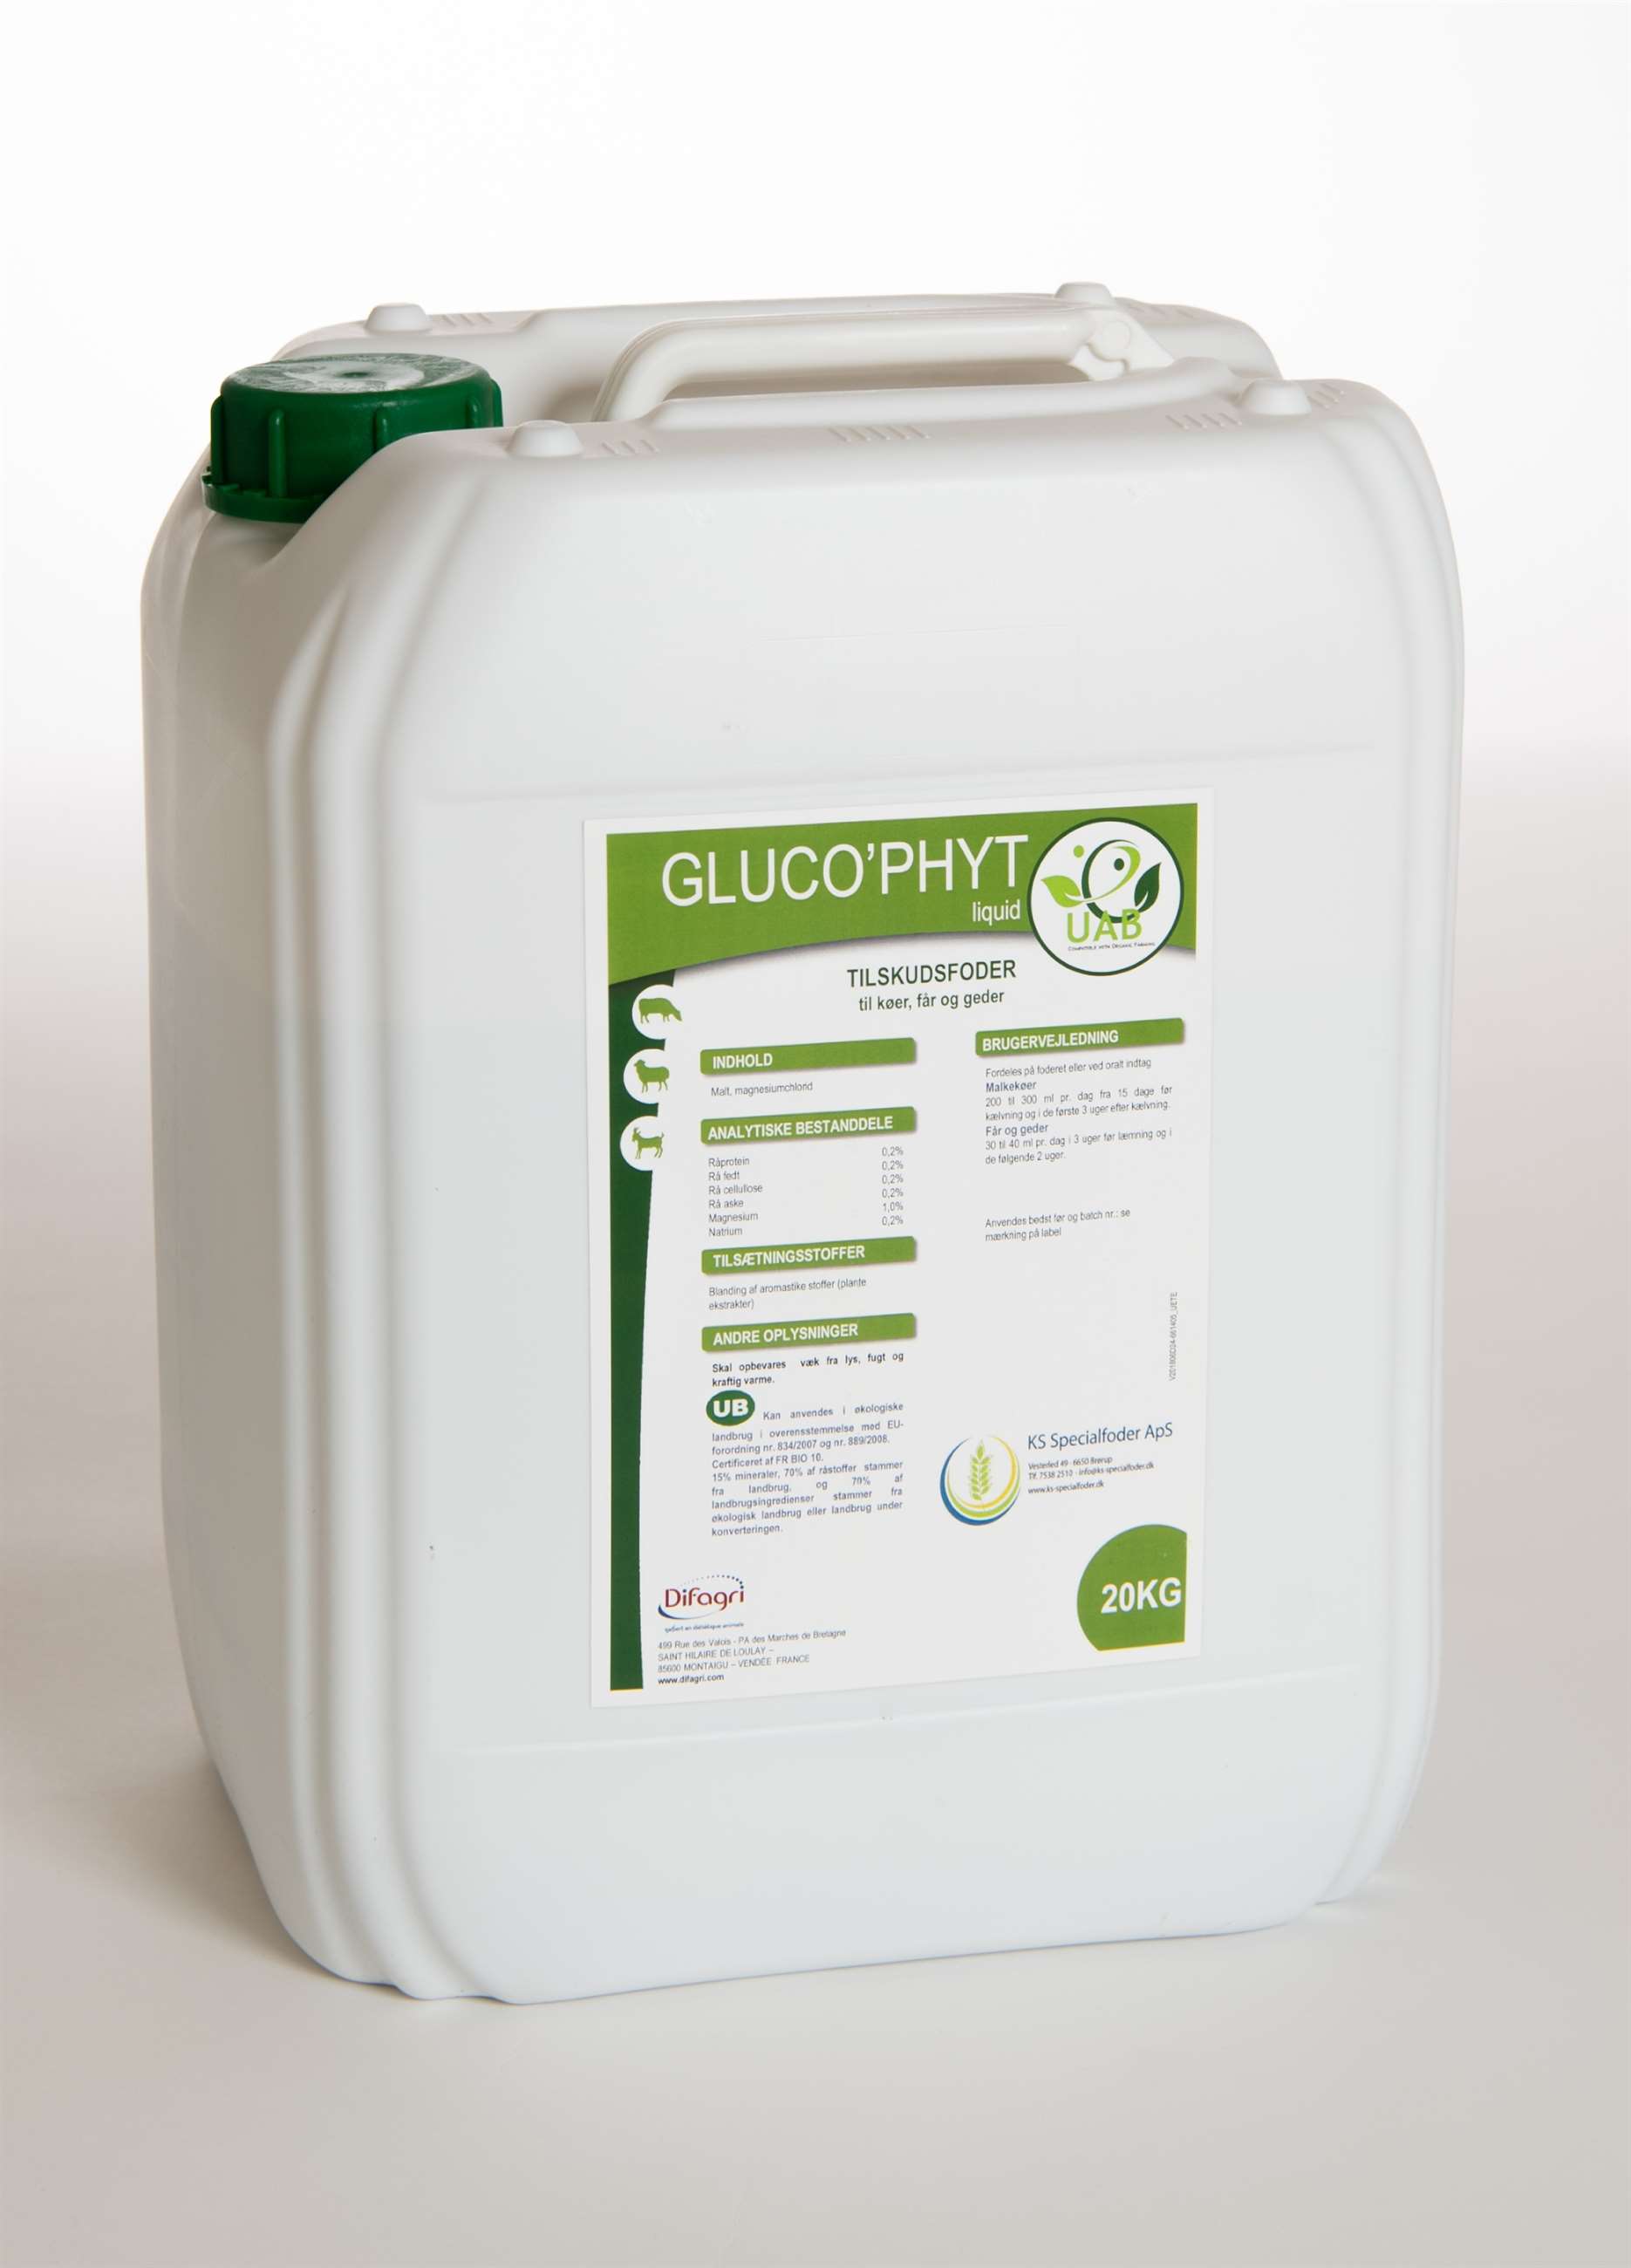 glucophyt, liquid